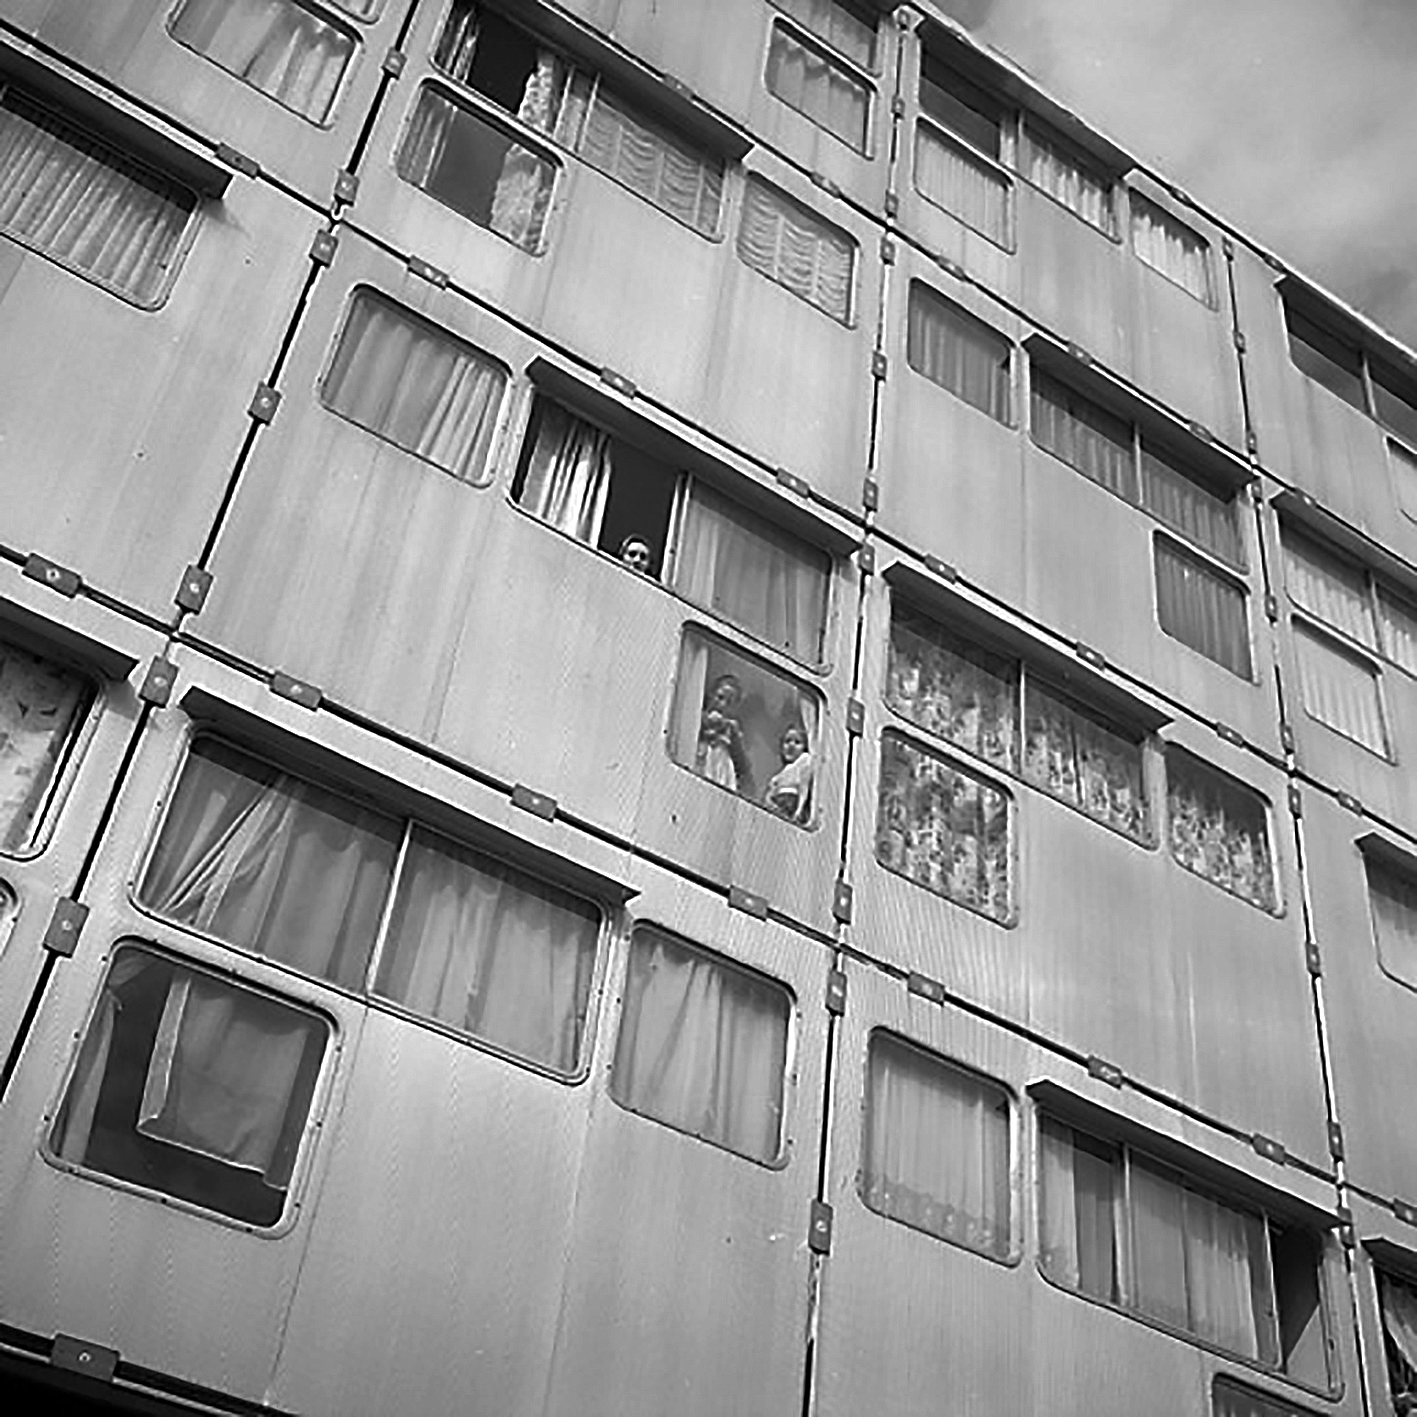 Panneaux de façade en tôle d’aluminium striée, cité H.L.M. Emmaüs, Pierre-Montillet, Blanc-Mesnil, 1957 (G. Candilis, Josic et Woods, arch.).